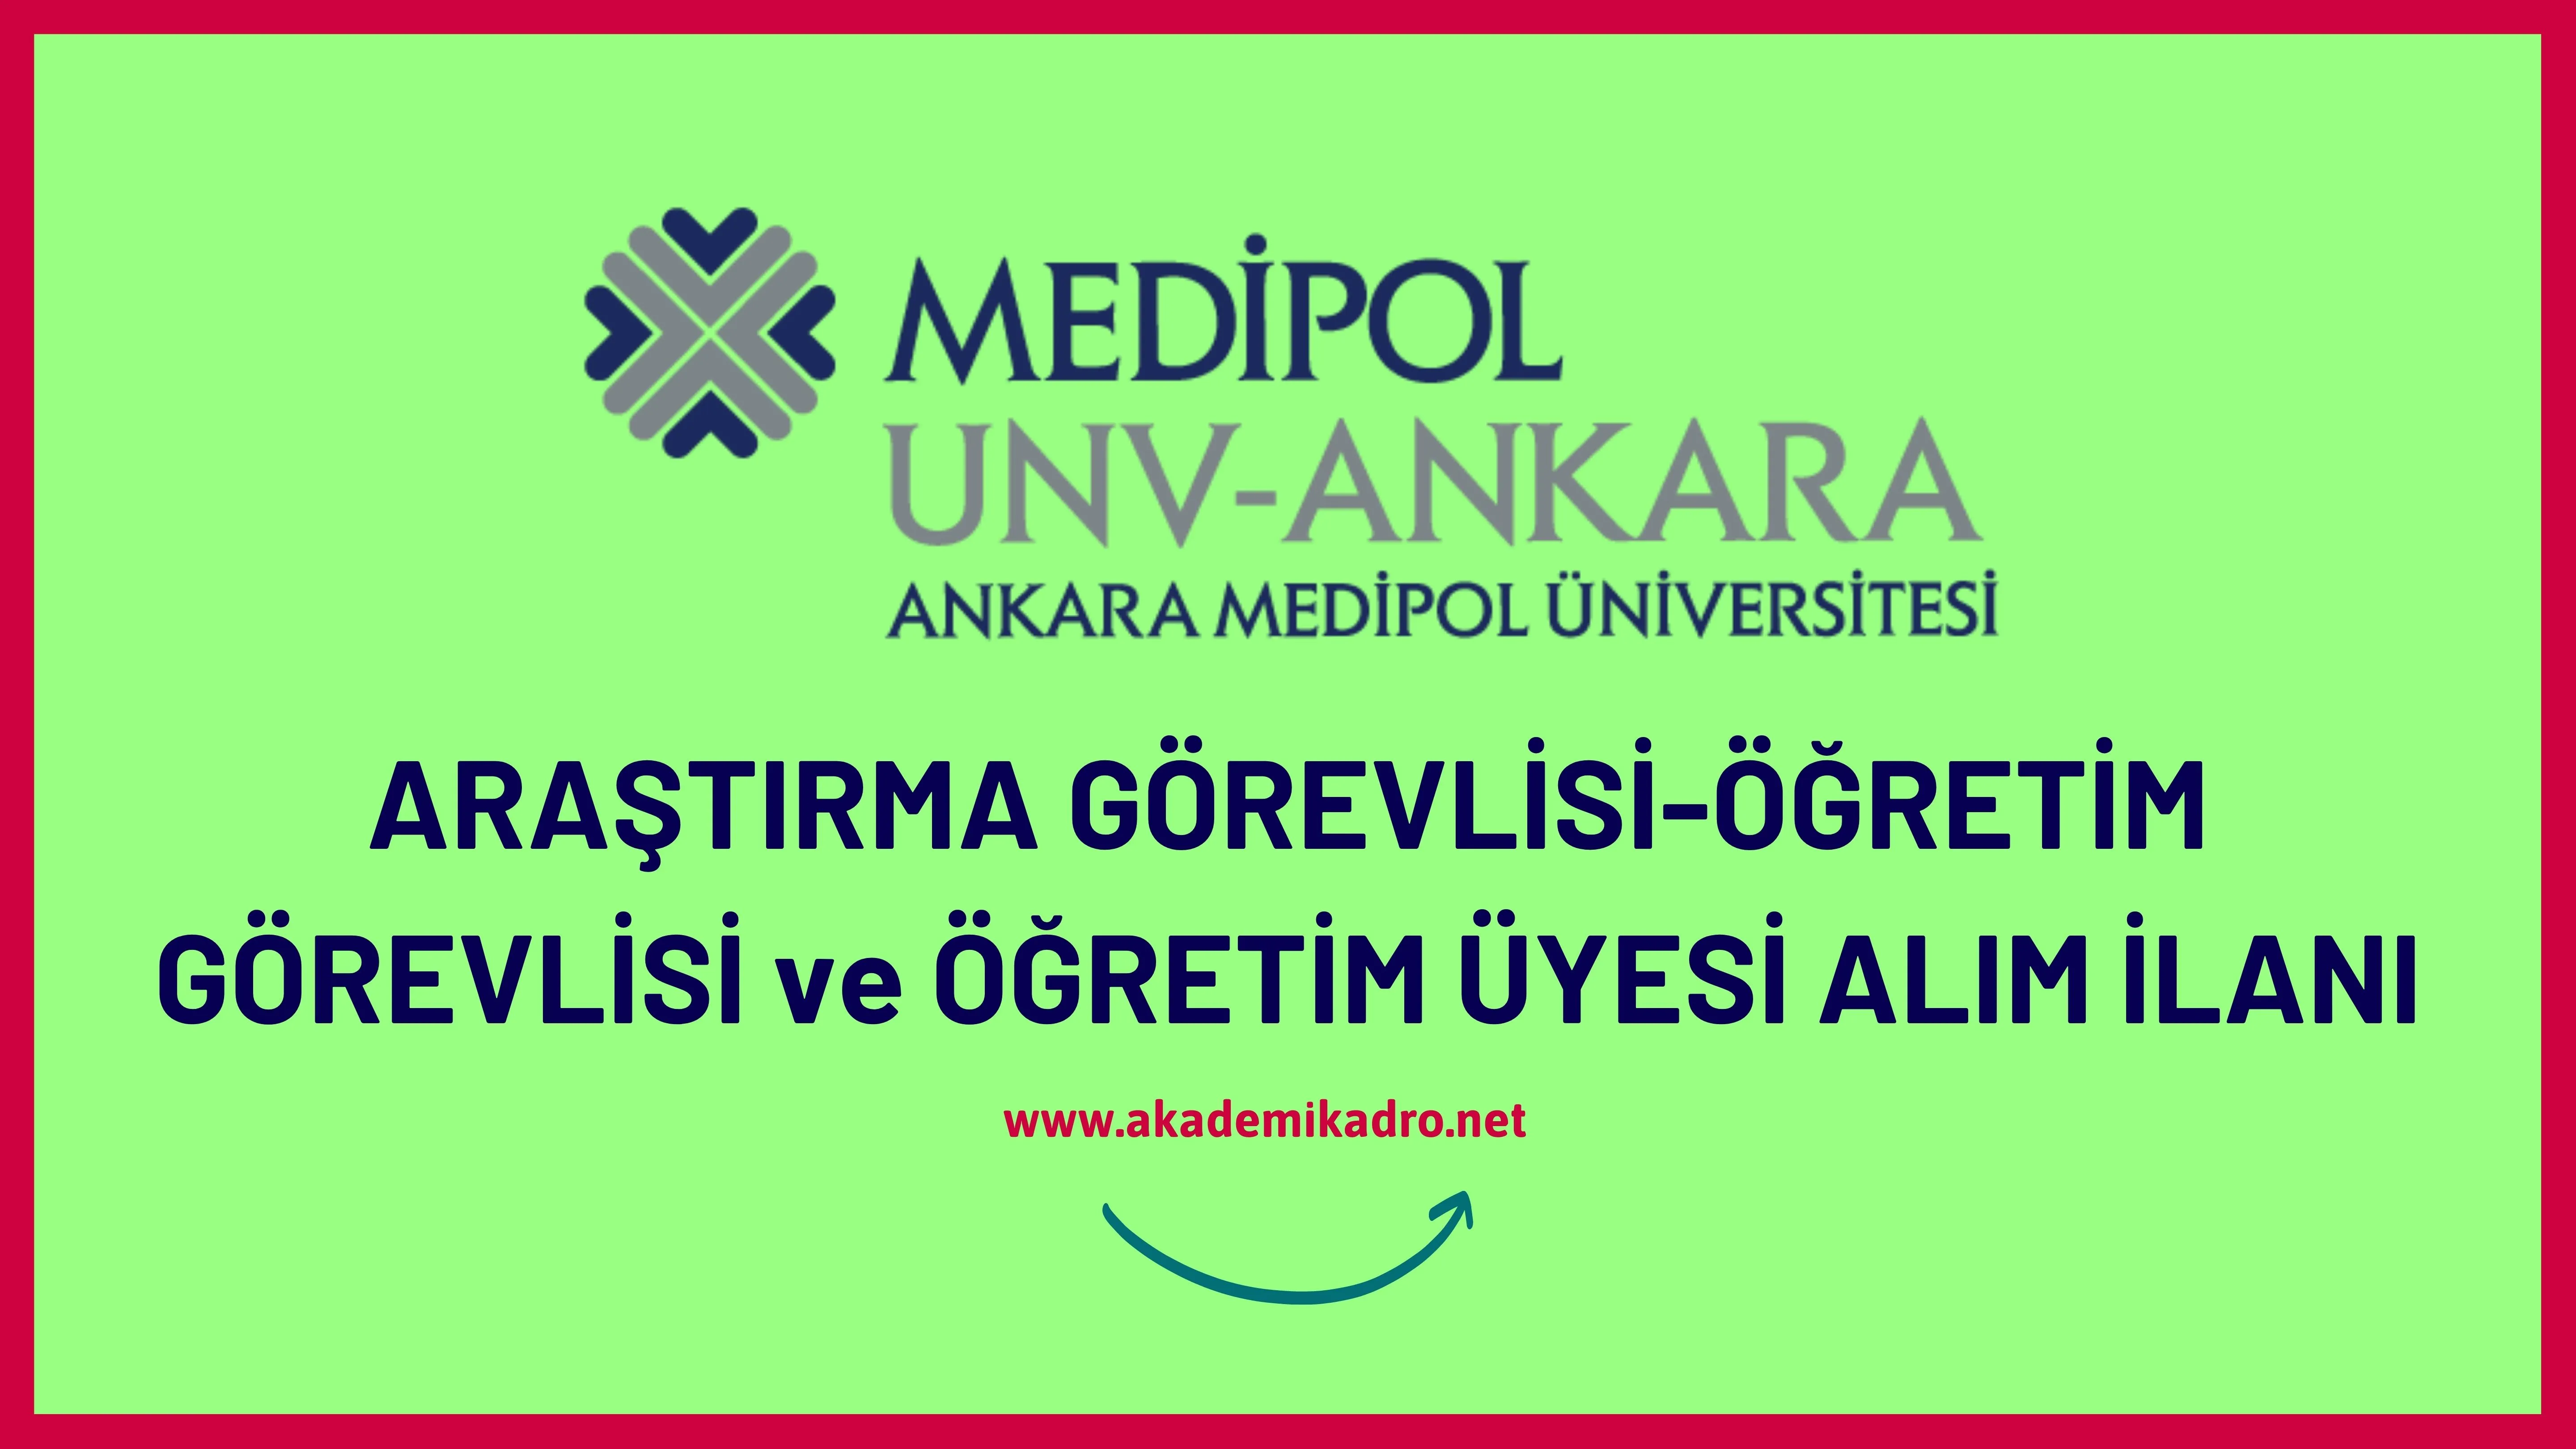 Ankara Medipol Üniversitesi 10 Öğretim Görevlisi, 11 Araştırma görevlisi ve 40 öğretim üyesi alacaktır.